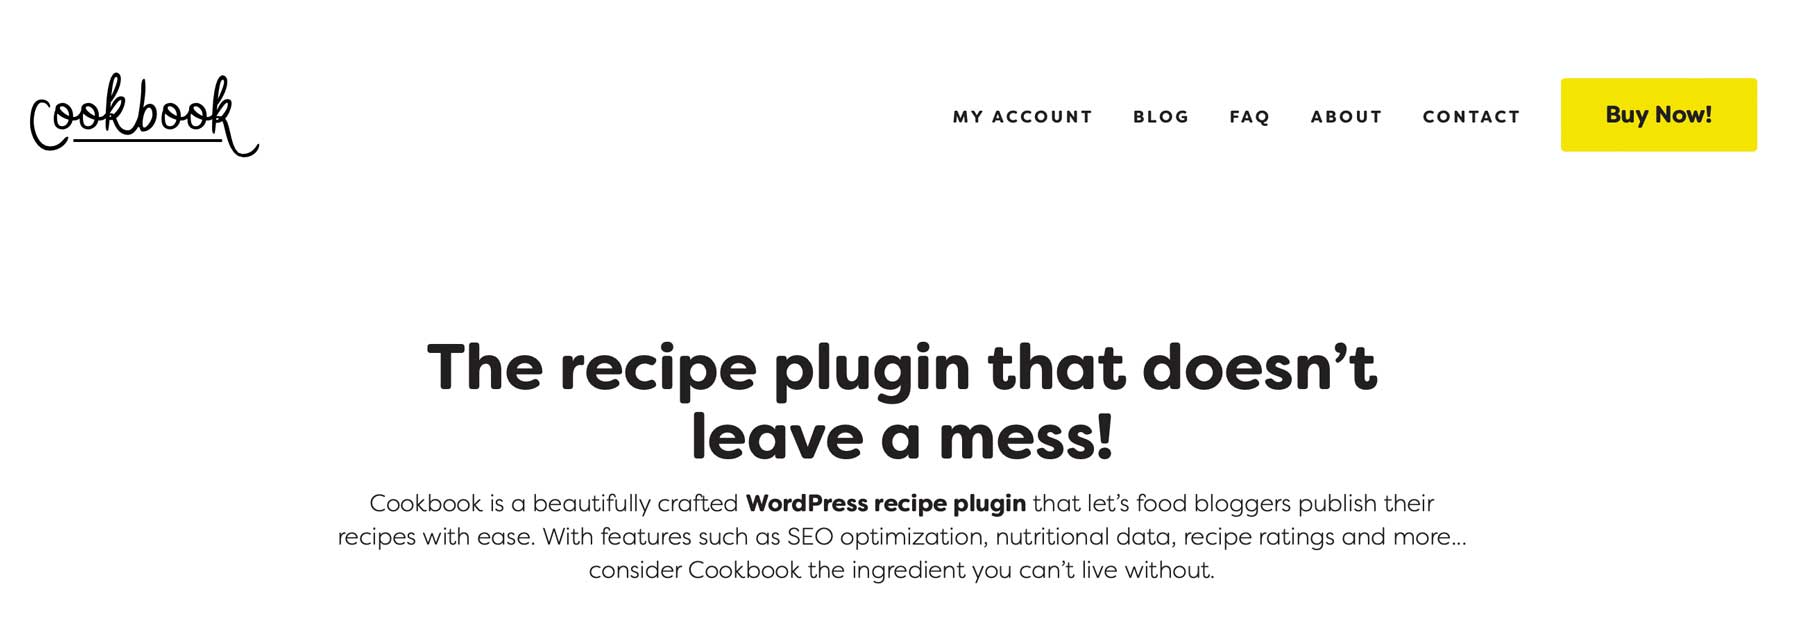 Cookbook recipe plugin